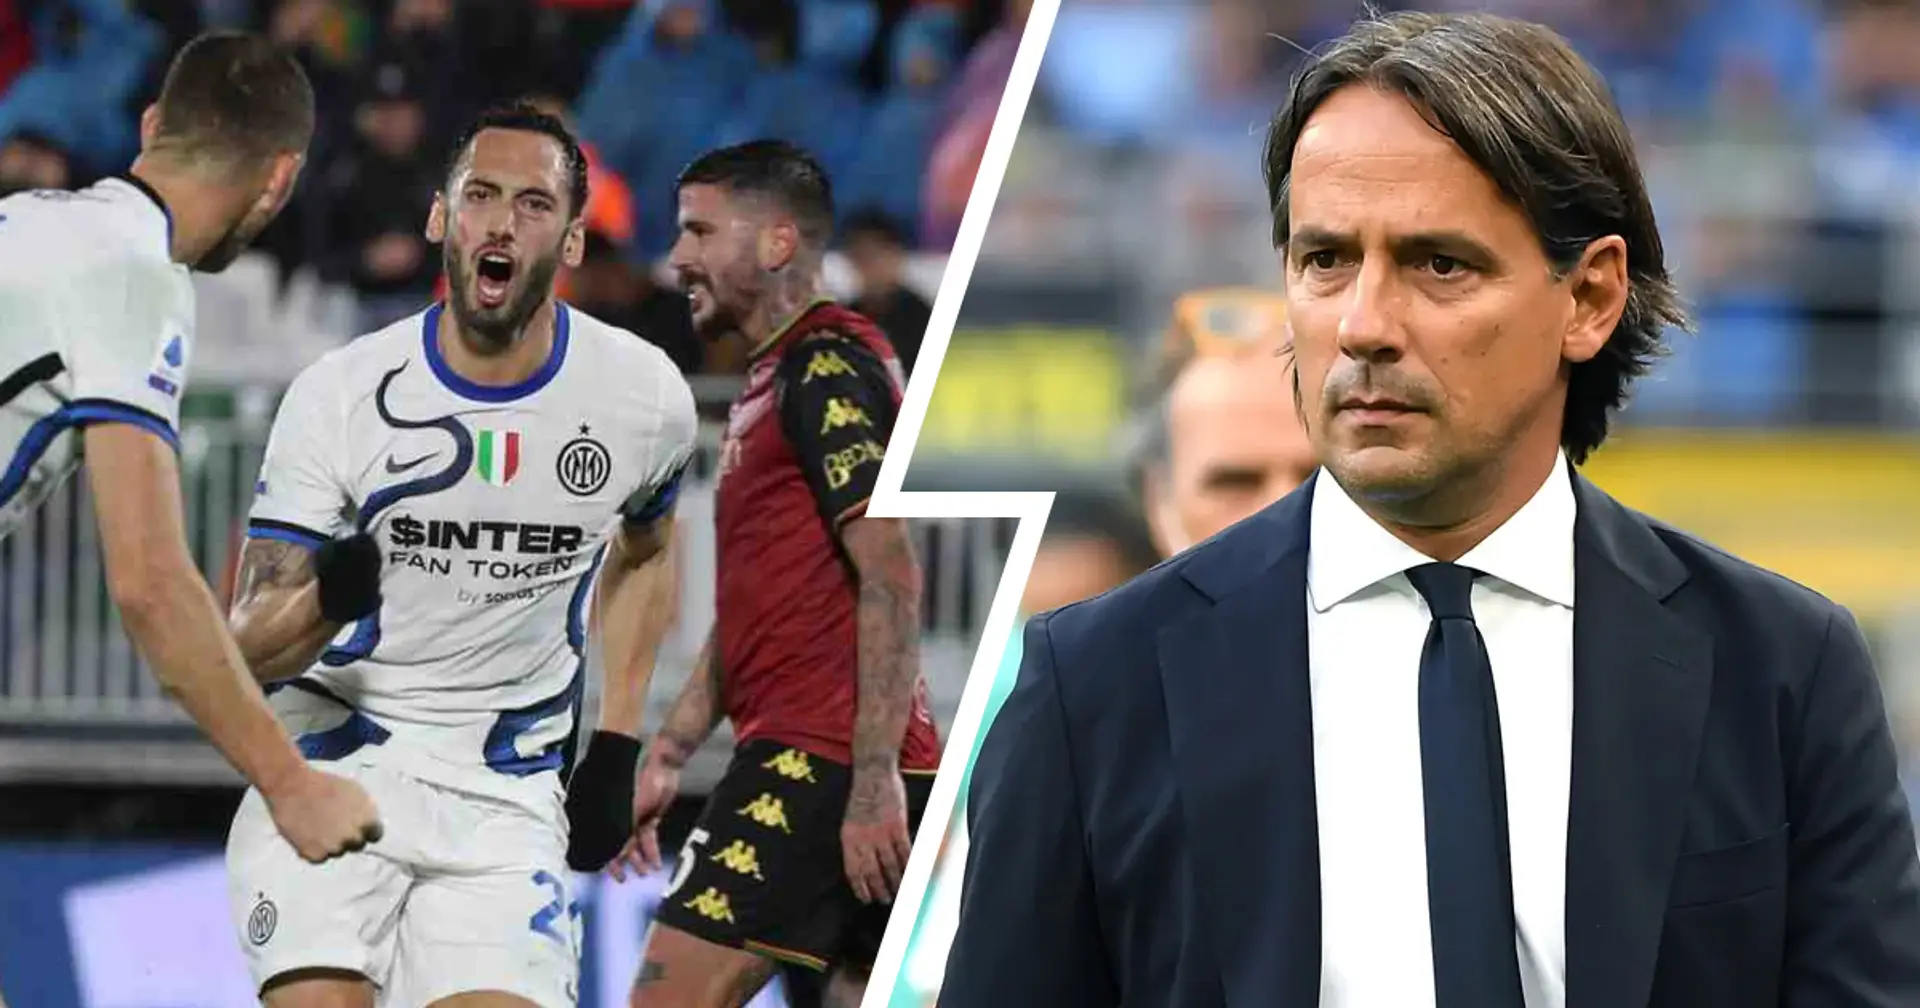 La partita contro il Venezia ha mostrato una "nuova" Inter: Inzaghi ha proposto una novità tattica assoluta 